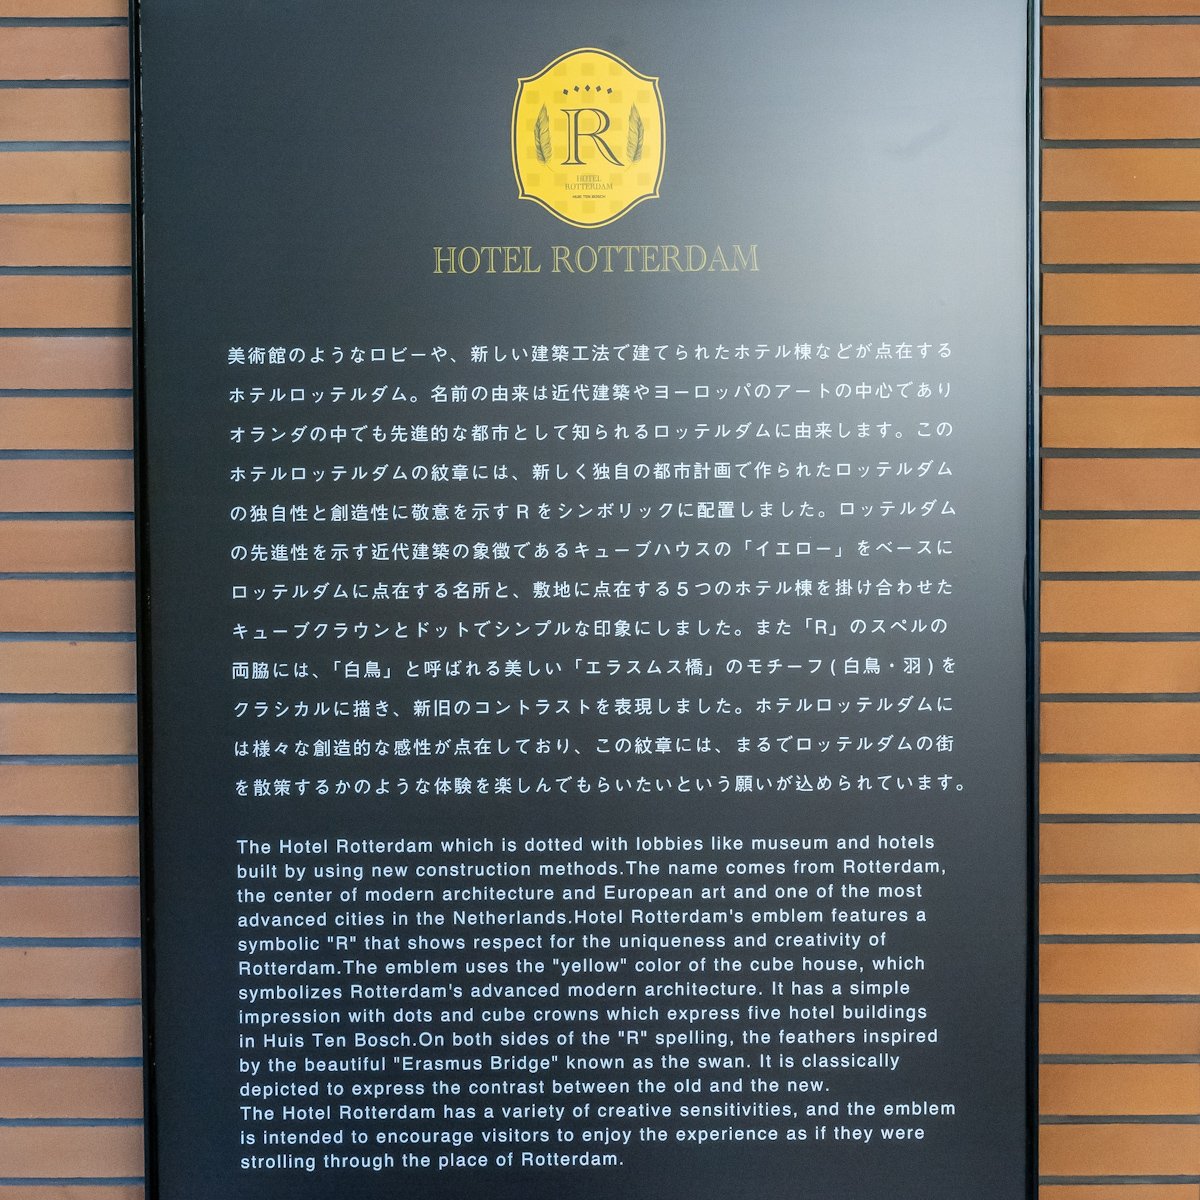 ハウステンボス オフィシャルホテル『ホテルロッテルダム』説明